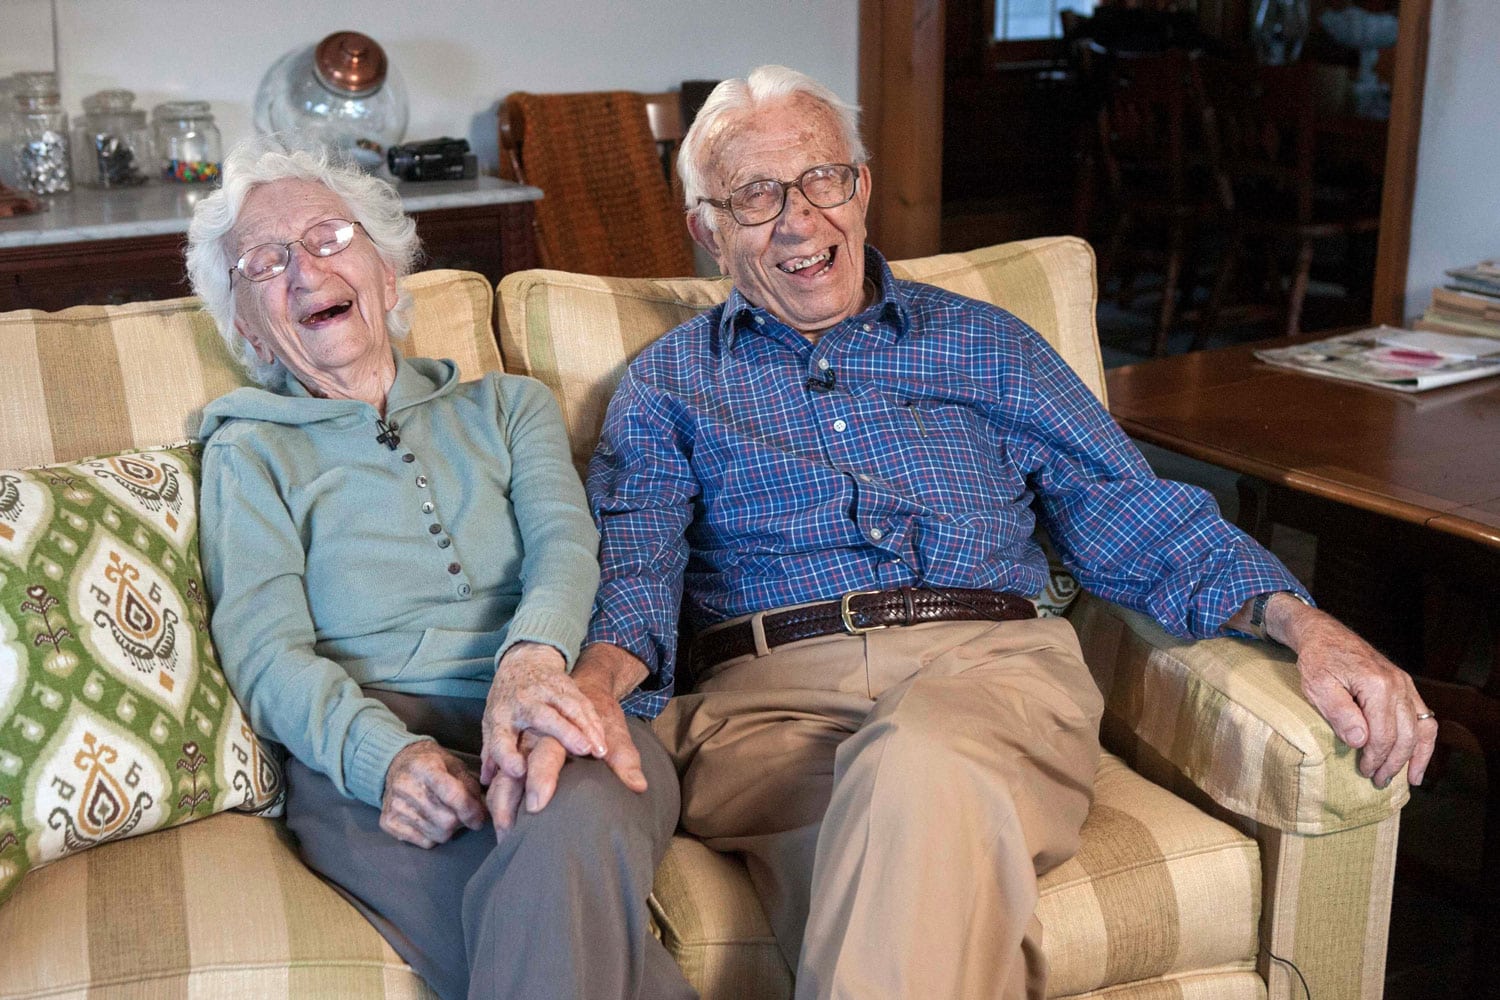 Un matrimonio celebra sus 80 años de casados: todavía siguen enamorados